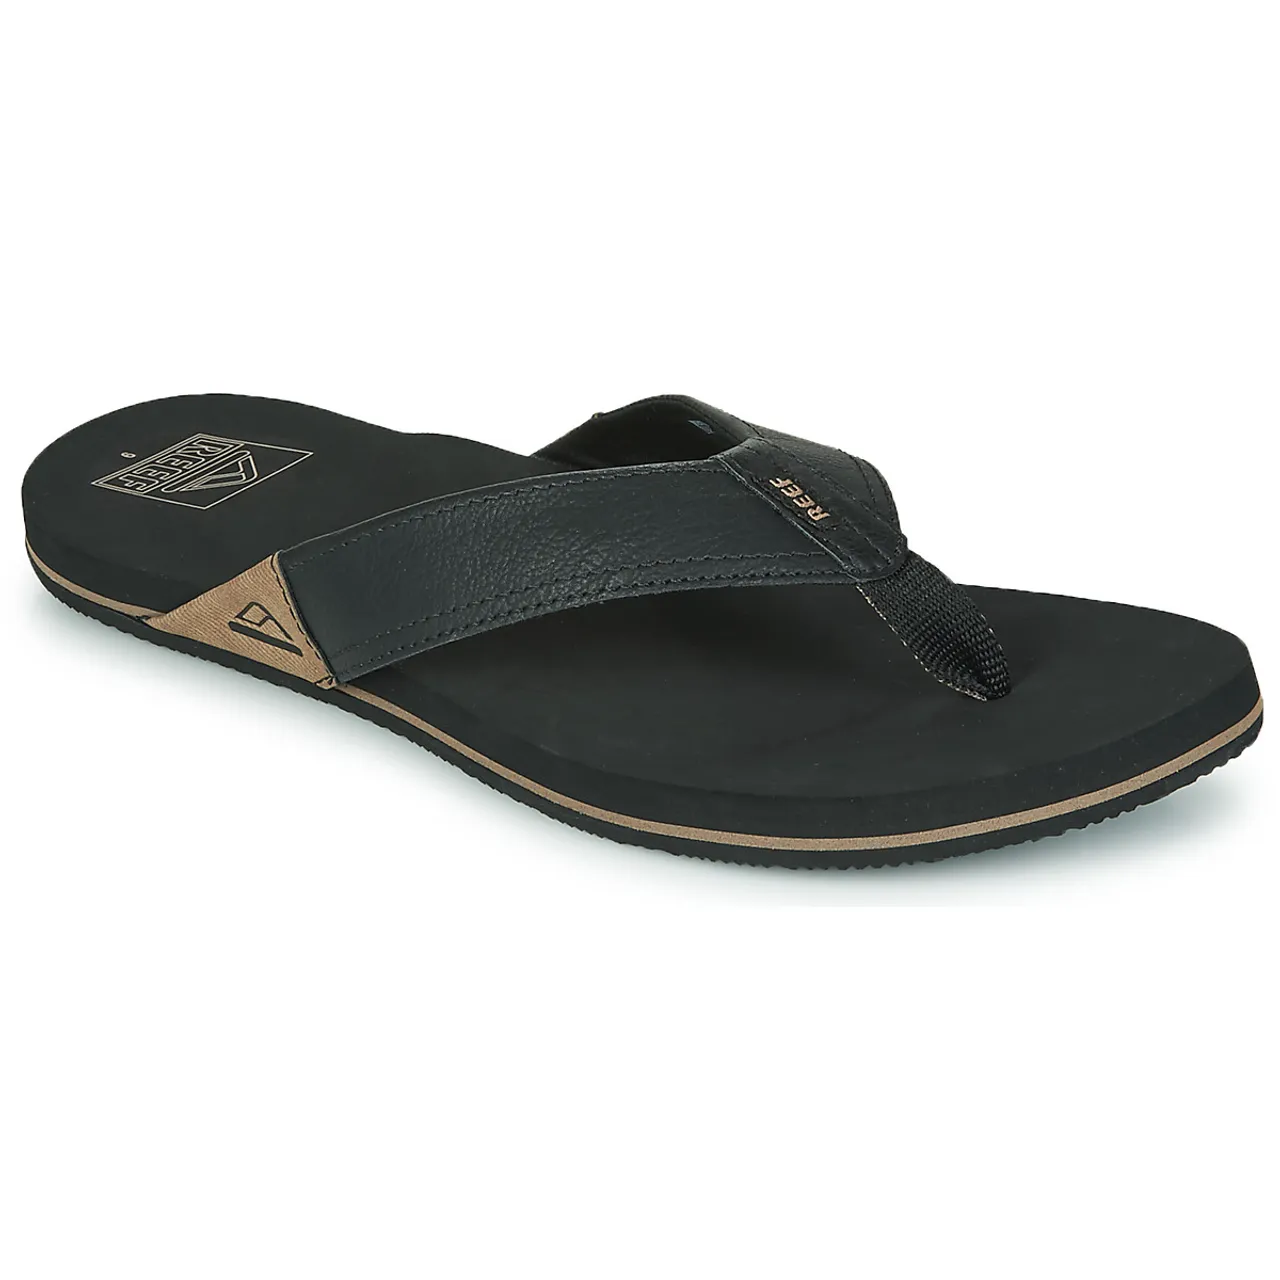 Reef  REEF NEWPORT  men's Flip flops / Sandals (Shoes) in Black